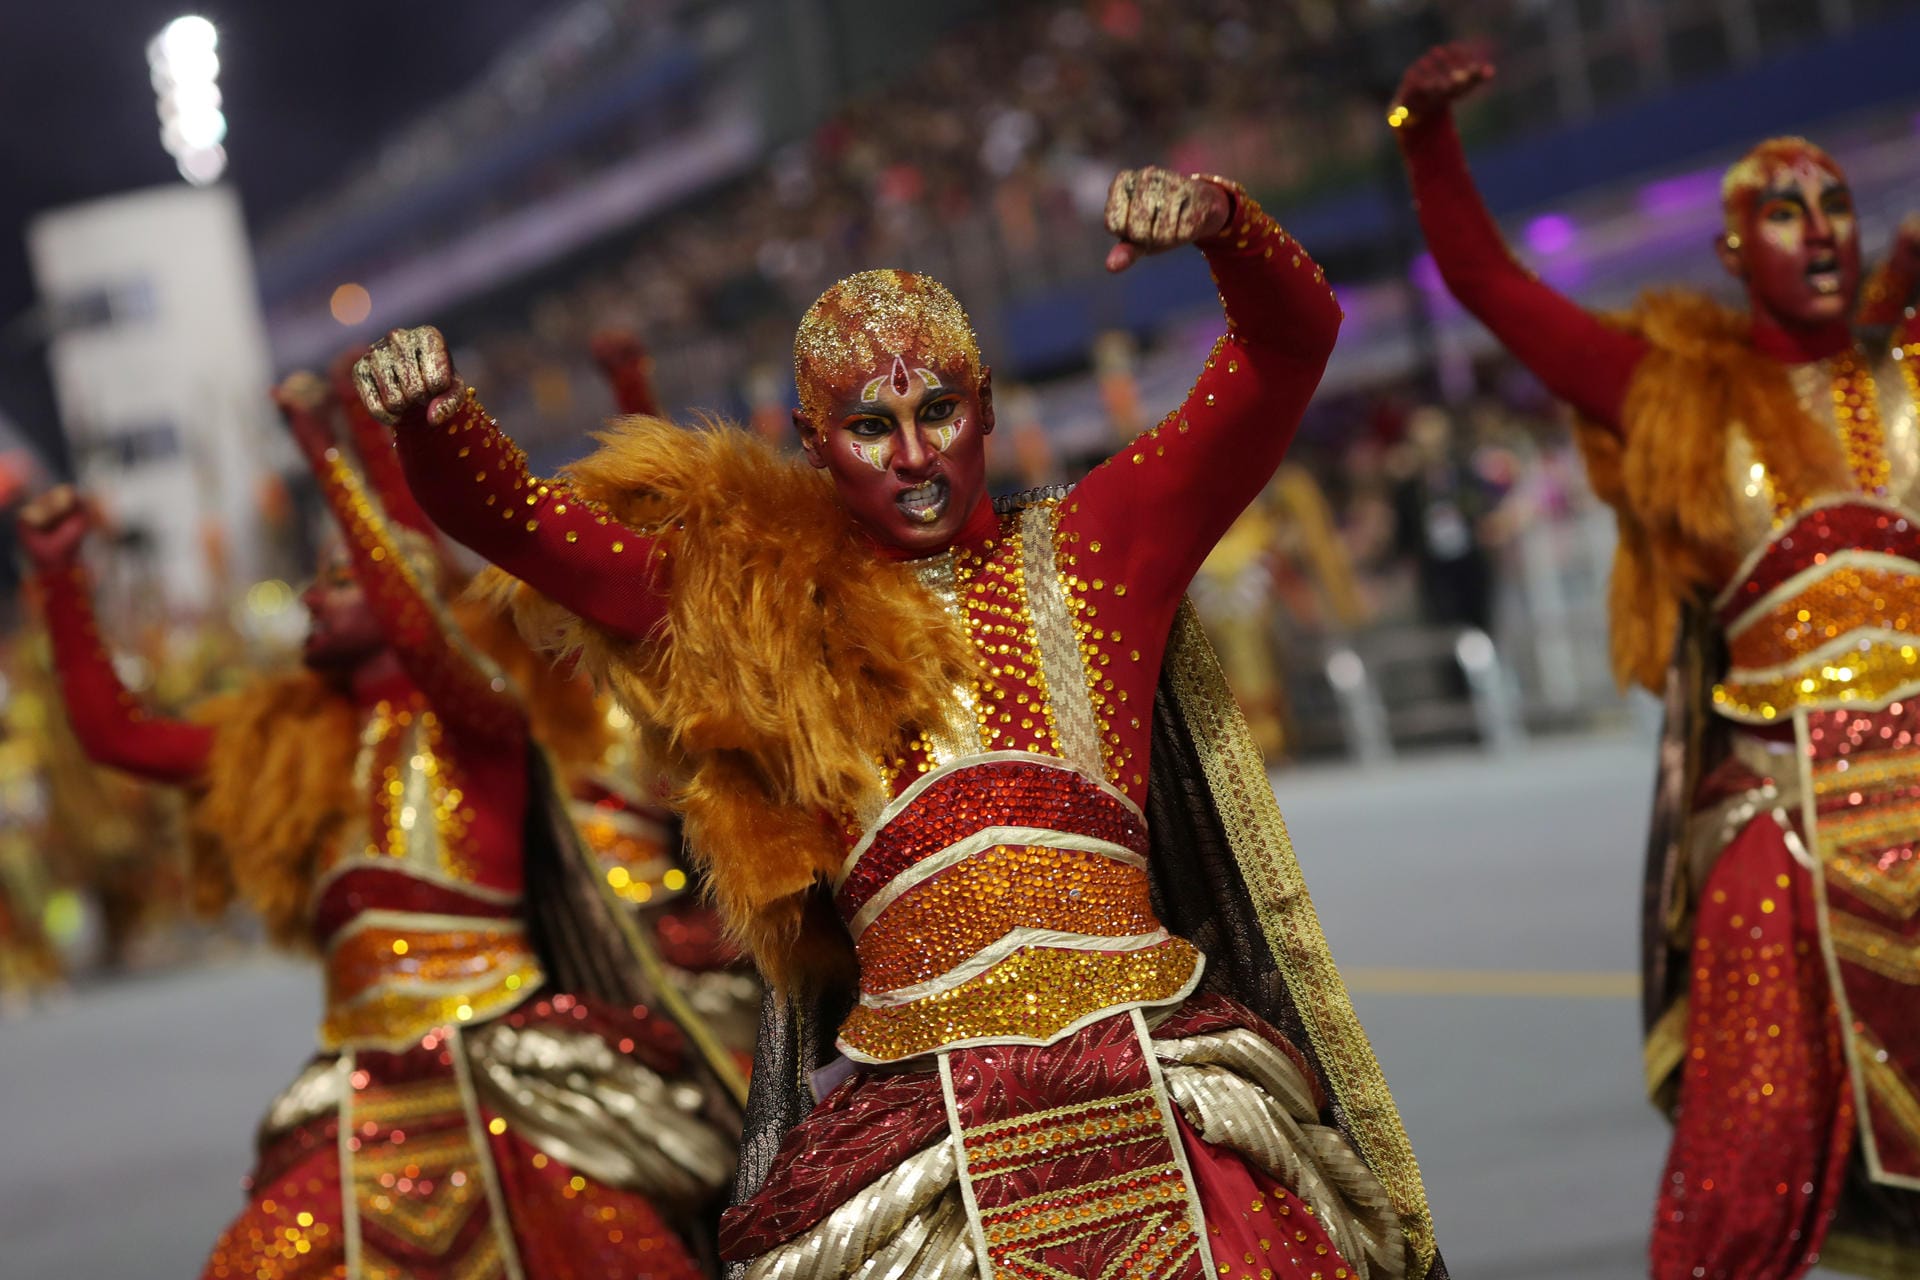 Tänzer in farbenfrohen Kostümen und Masken begeistern das Publikum in Sao Paulo.